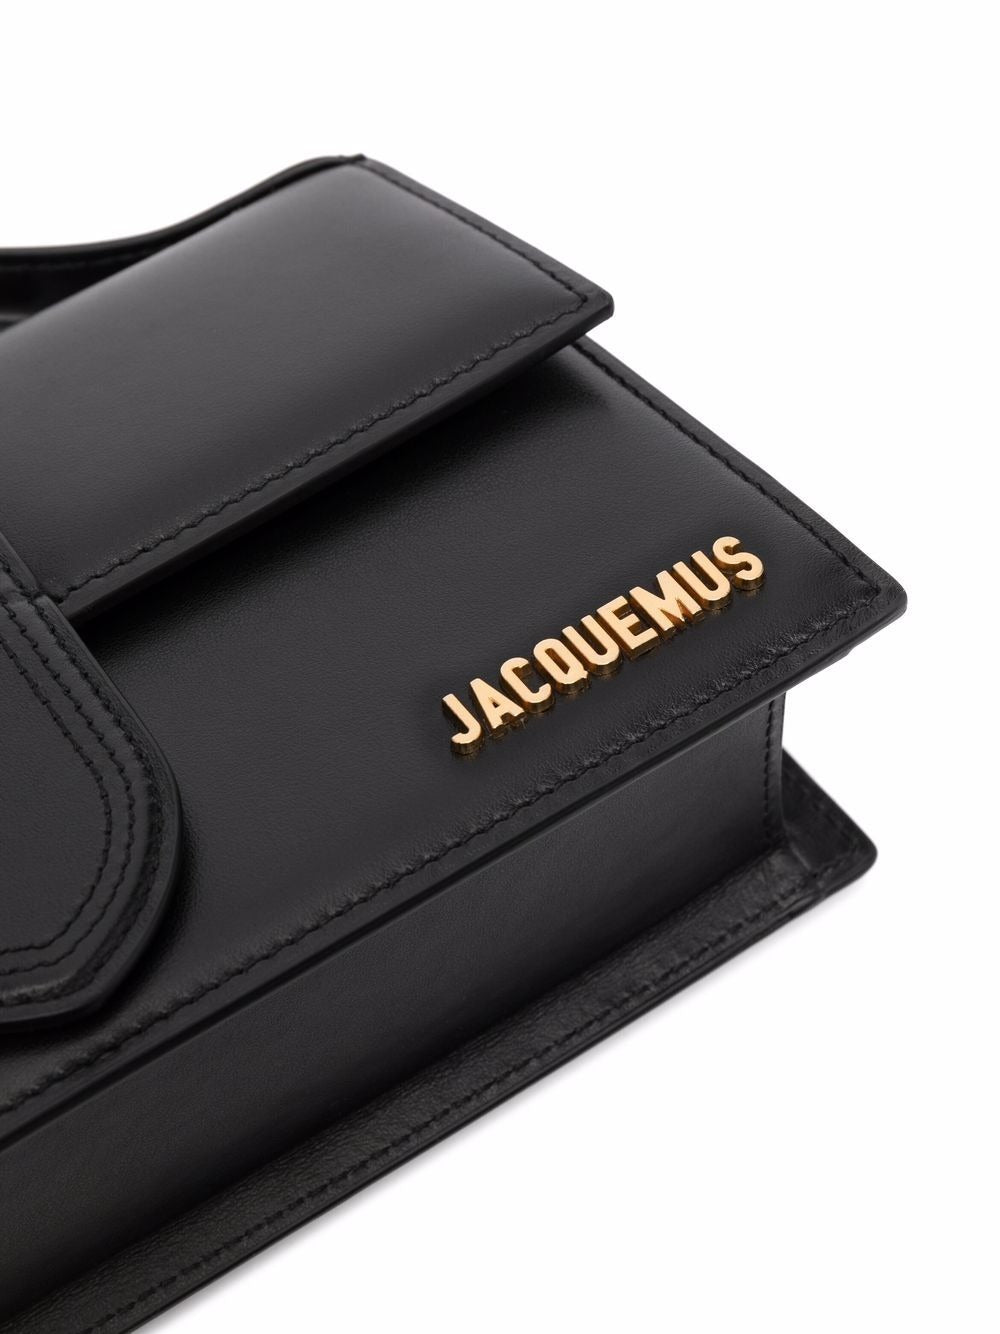 Jacquemus Le Grand Bambino Handbag in Black